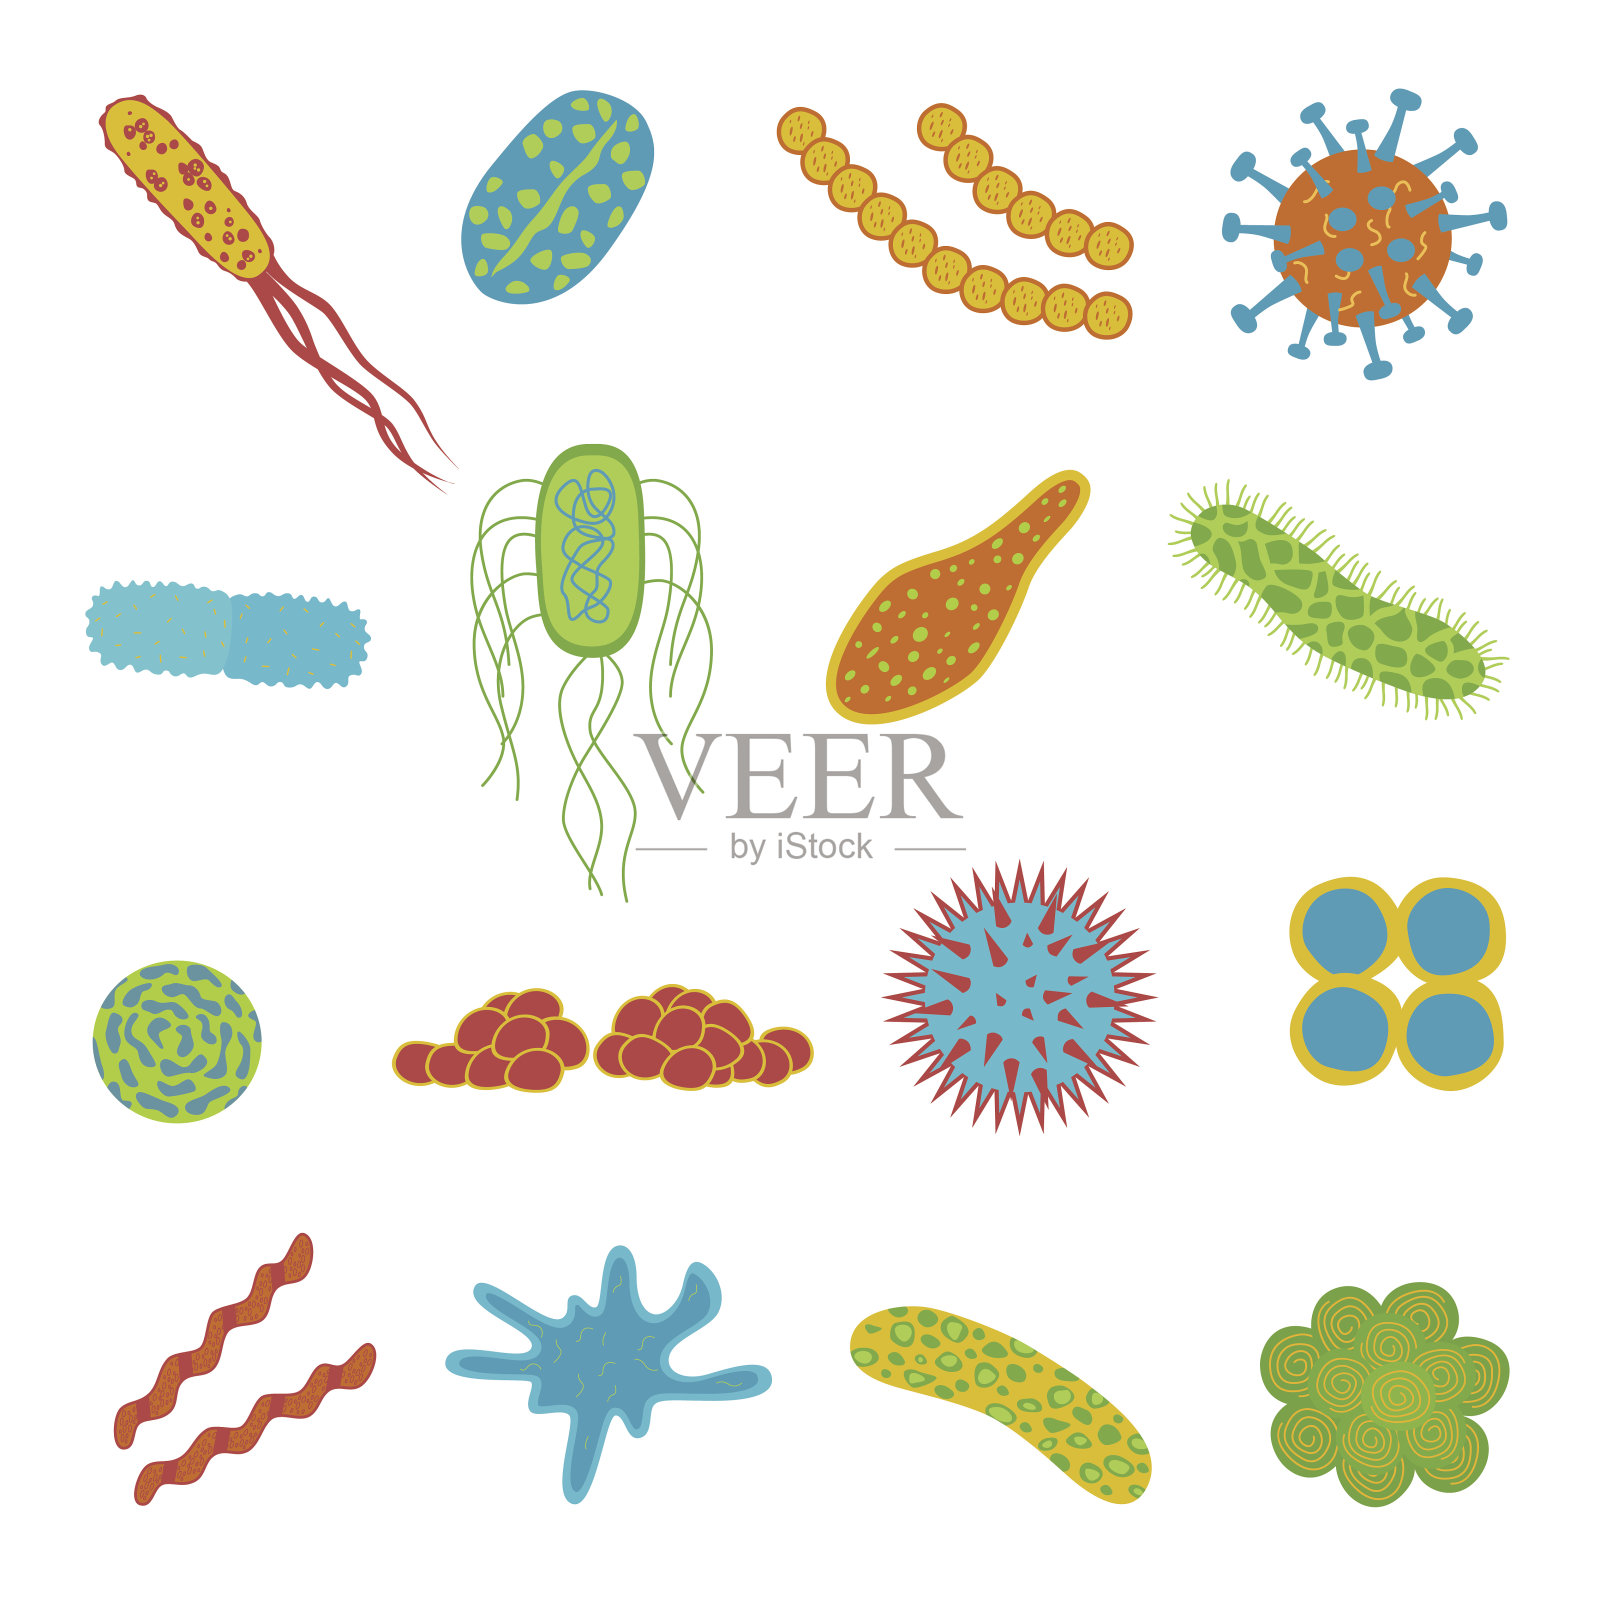 病毒和细菌图标隔离在白色背景上。插画图片素材